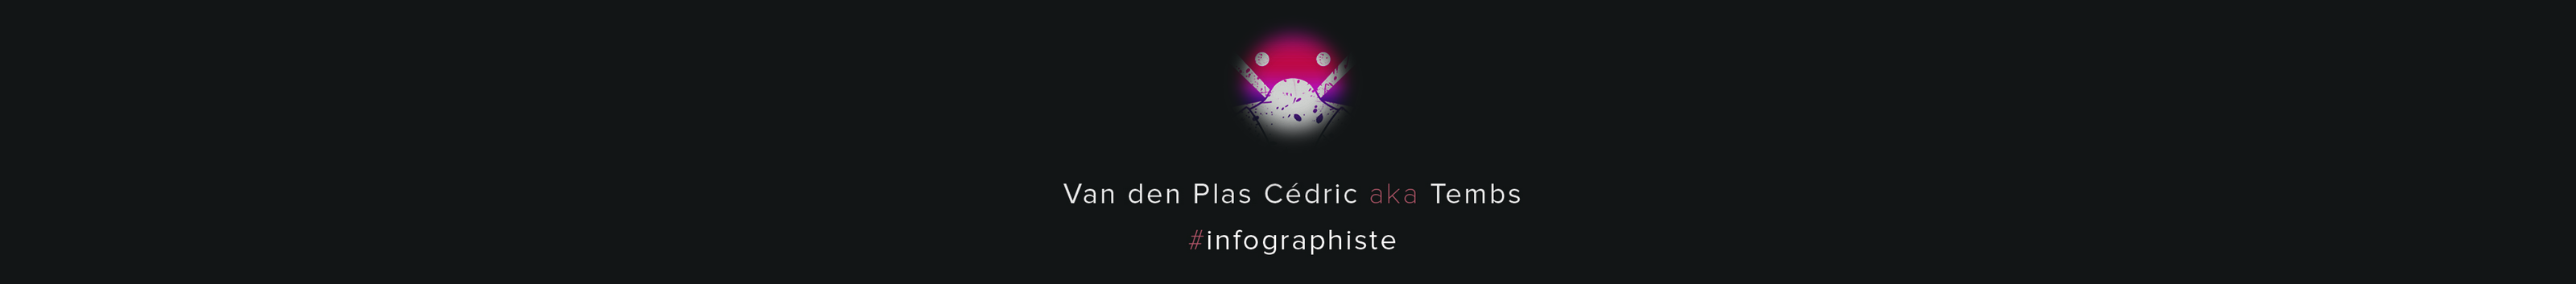 Cédric Van den Plas's profile banner